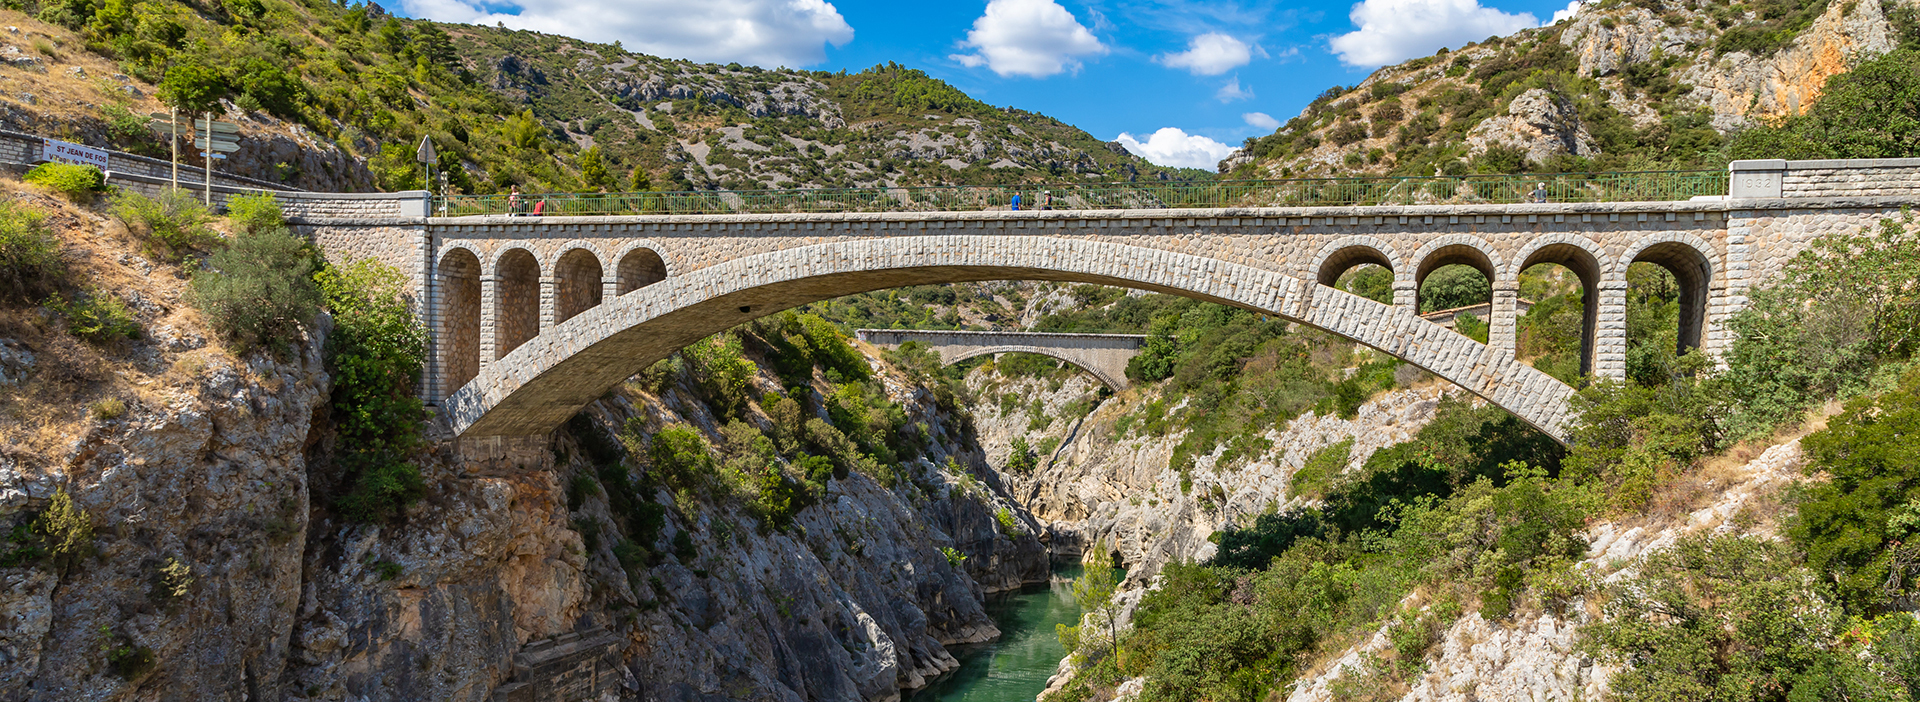 Puente du diable (del Diablo) en l'Hérault